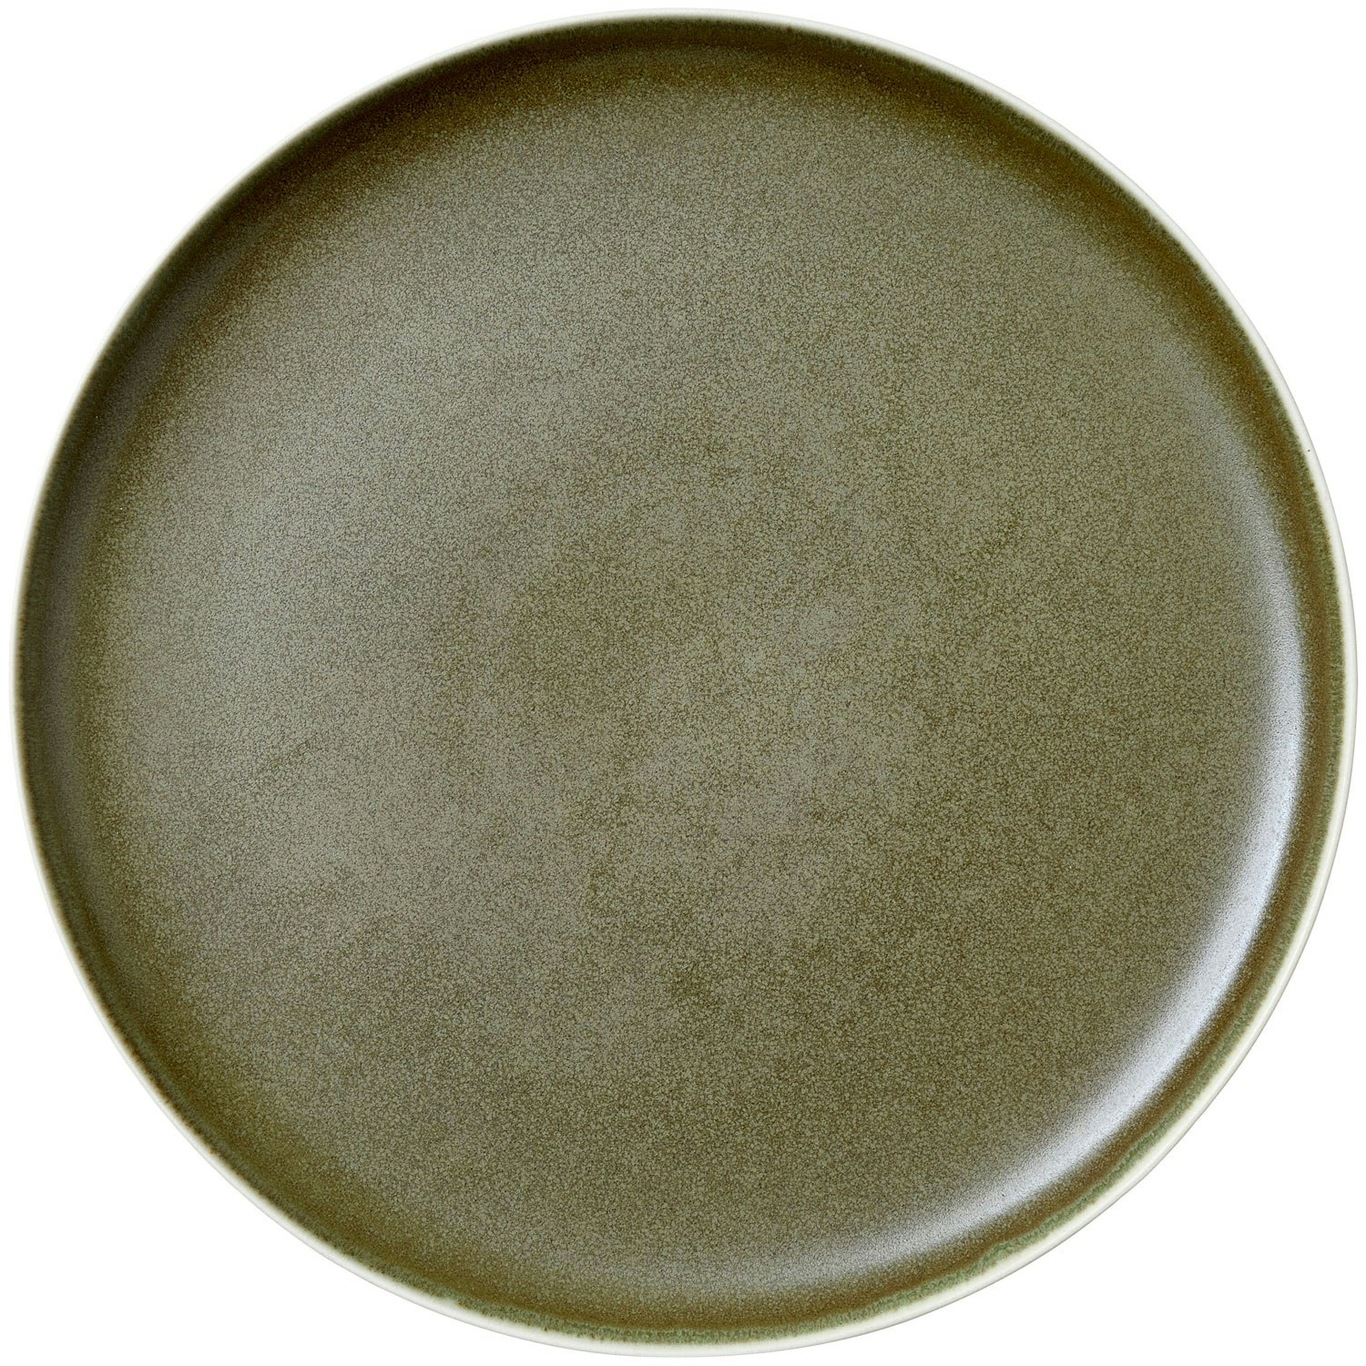 North Plate 27 cm, Matte White/Matte Moss